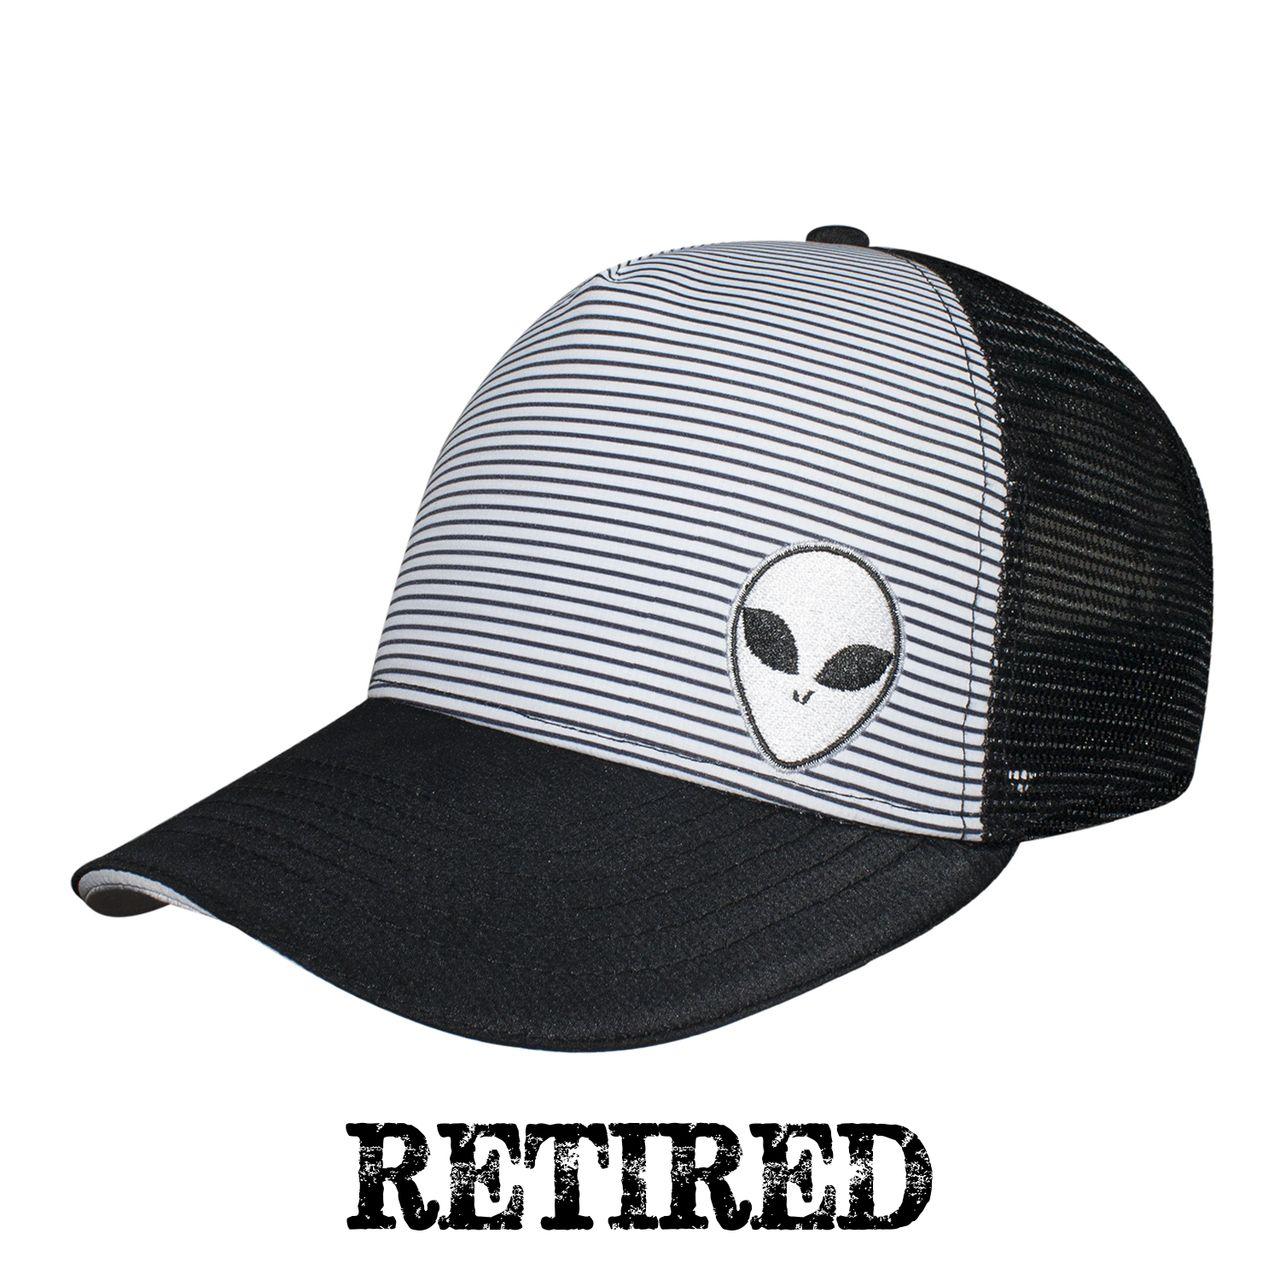 Alien-Looking Logo - Alien Trucker Hat. Men's Trucker Hats. Area 51 Trucker